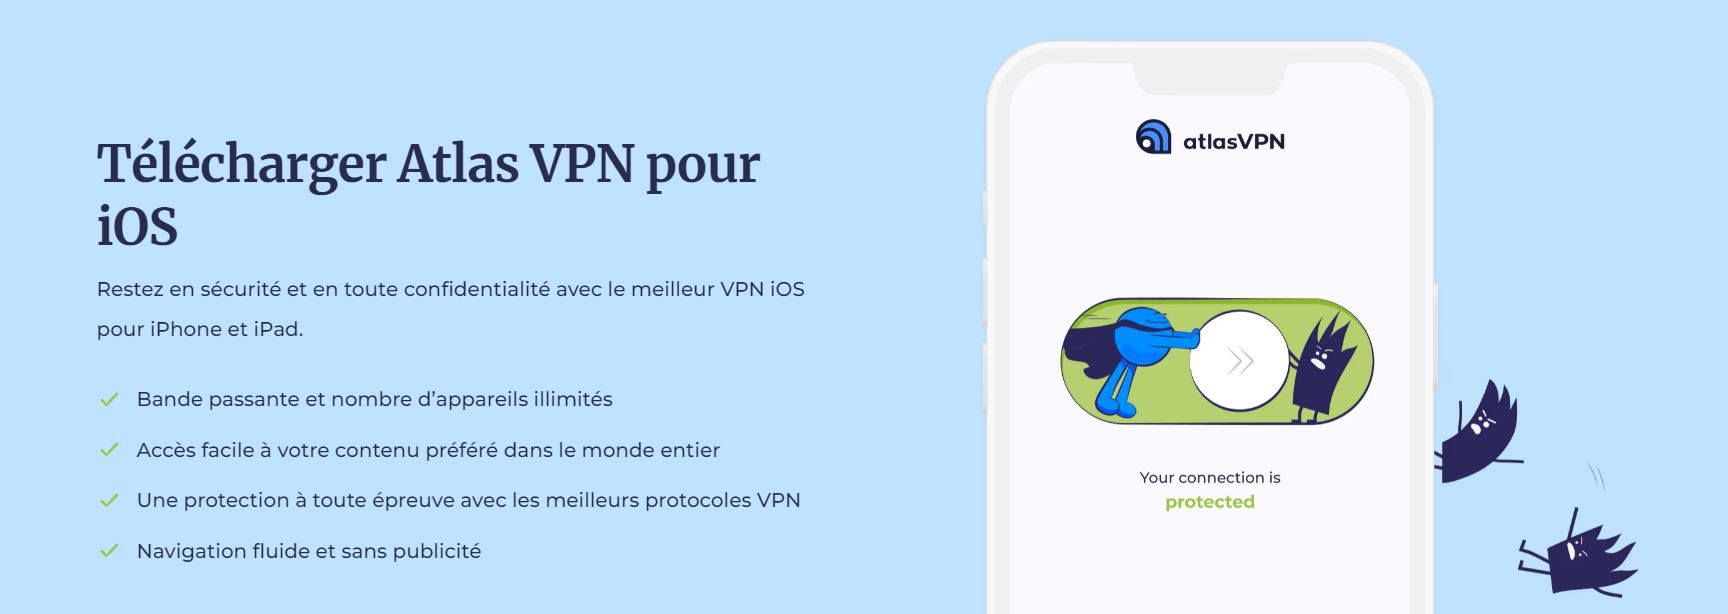 AtlasVPN - Accueil - VPN iPhone